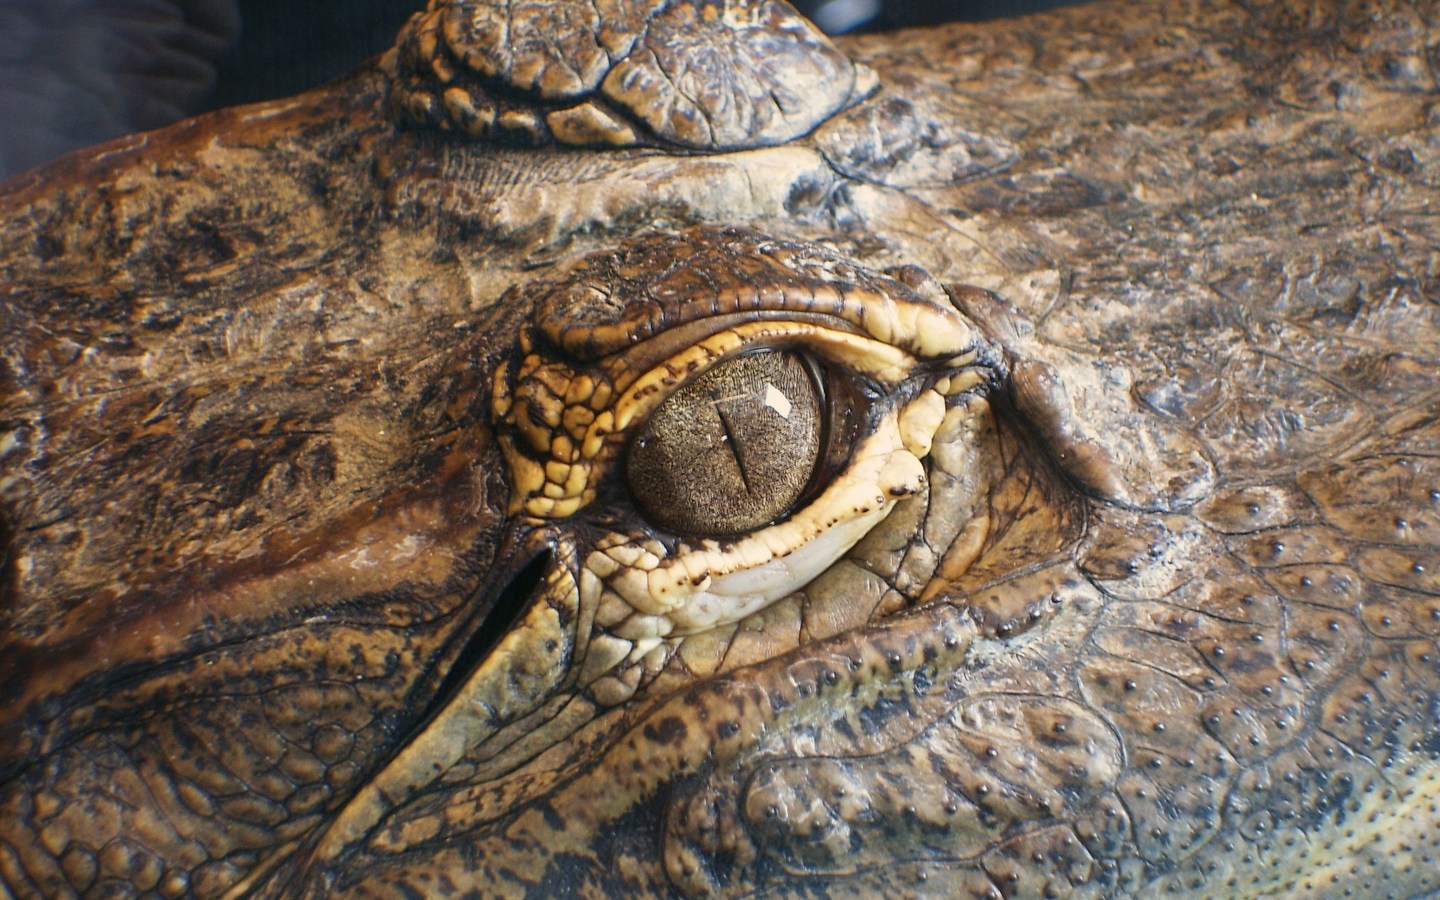 Download full size Reptiles Reptiles wallpaper / 1440x900